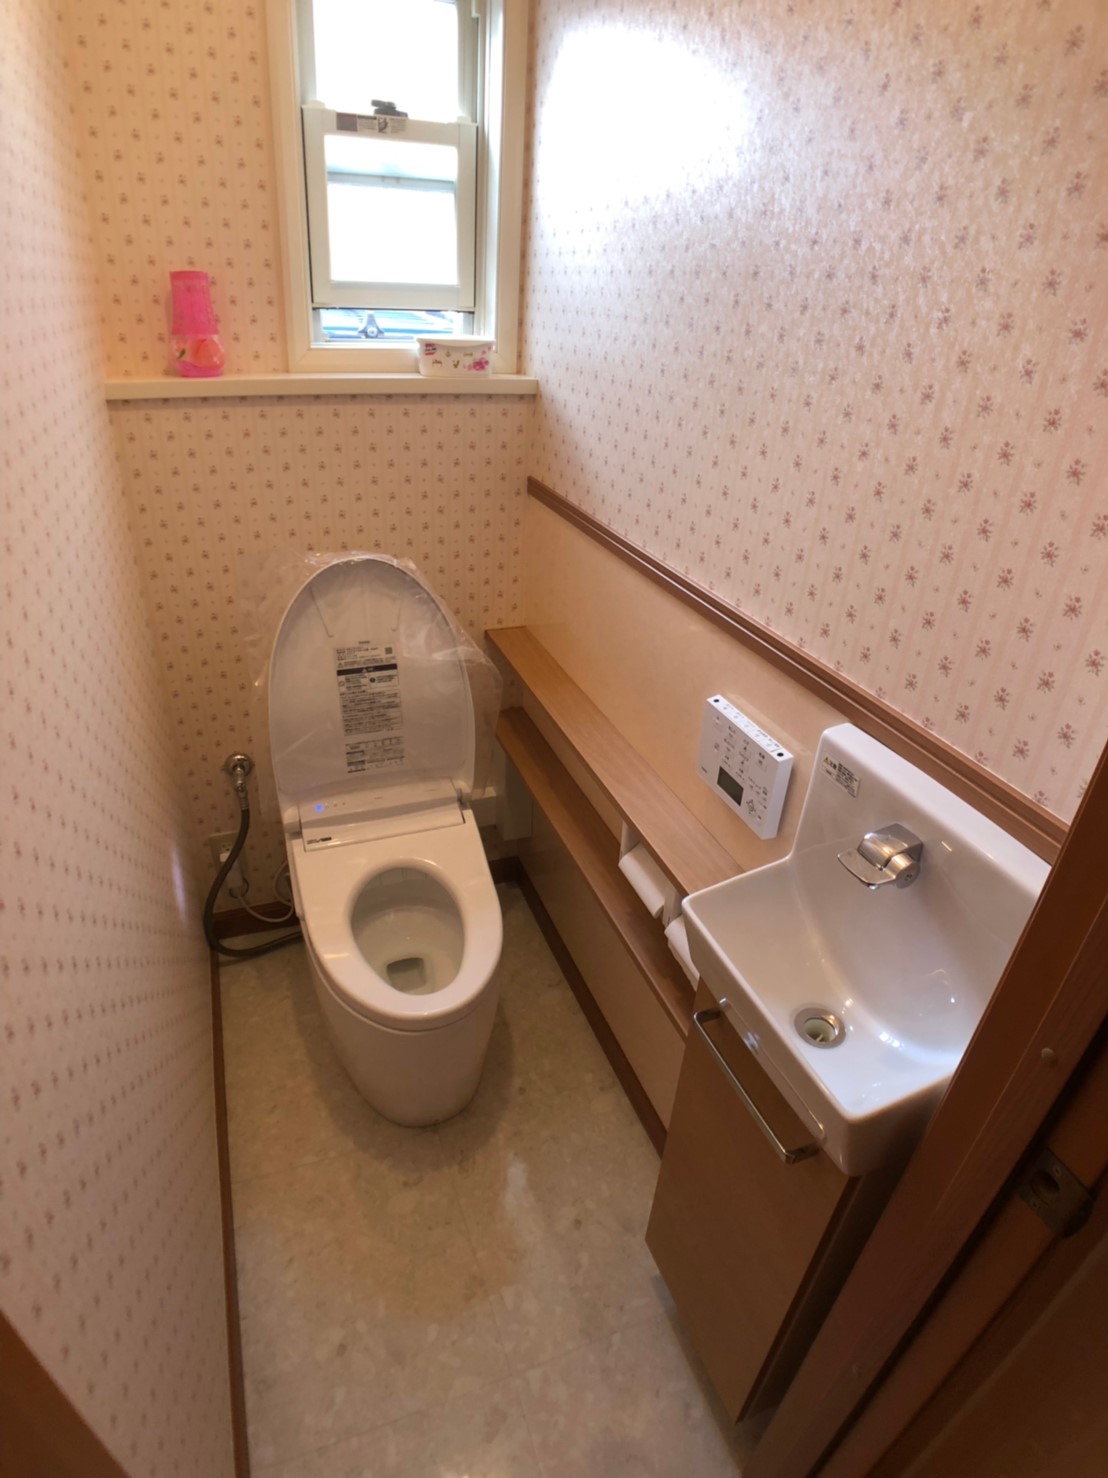 千葉県浦安市 戸建て 手洗いカウンターでおしゃれなトイレ空間へ 株式会社ボンズビルダー